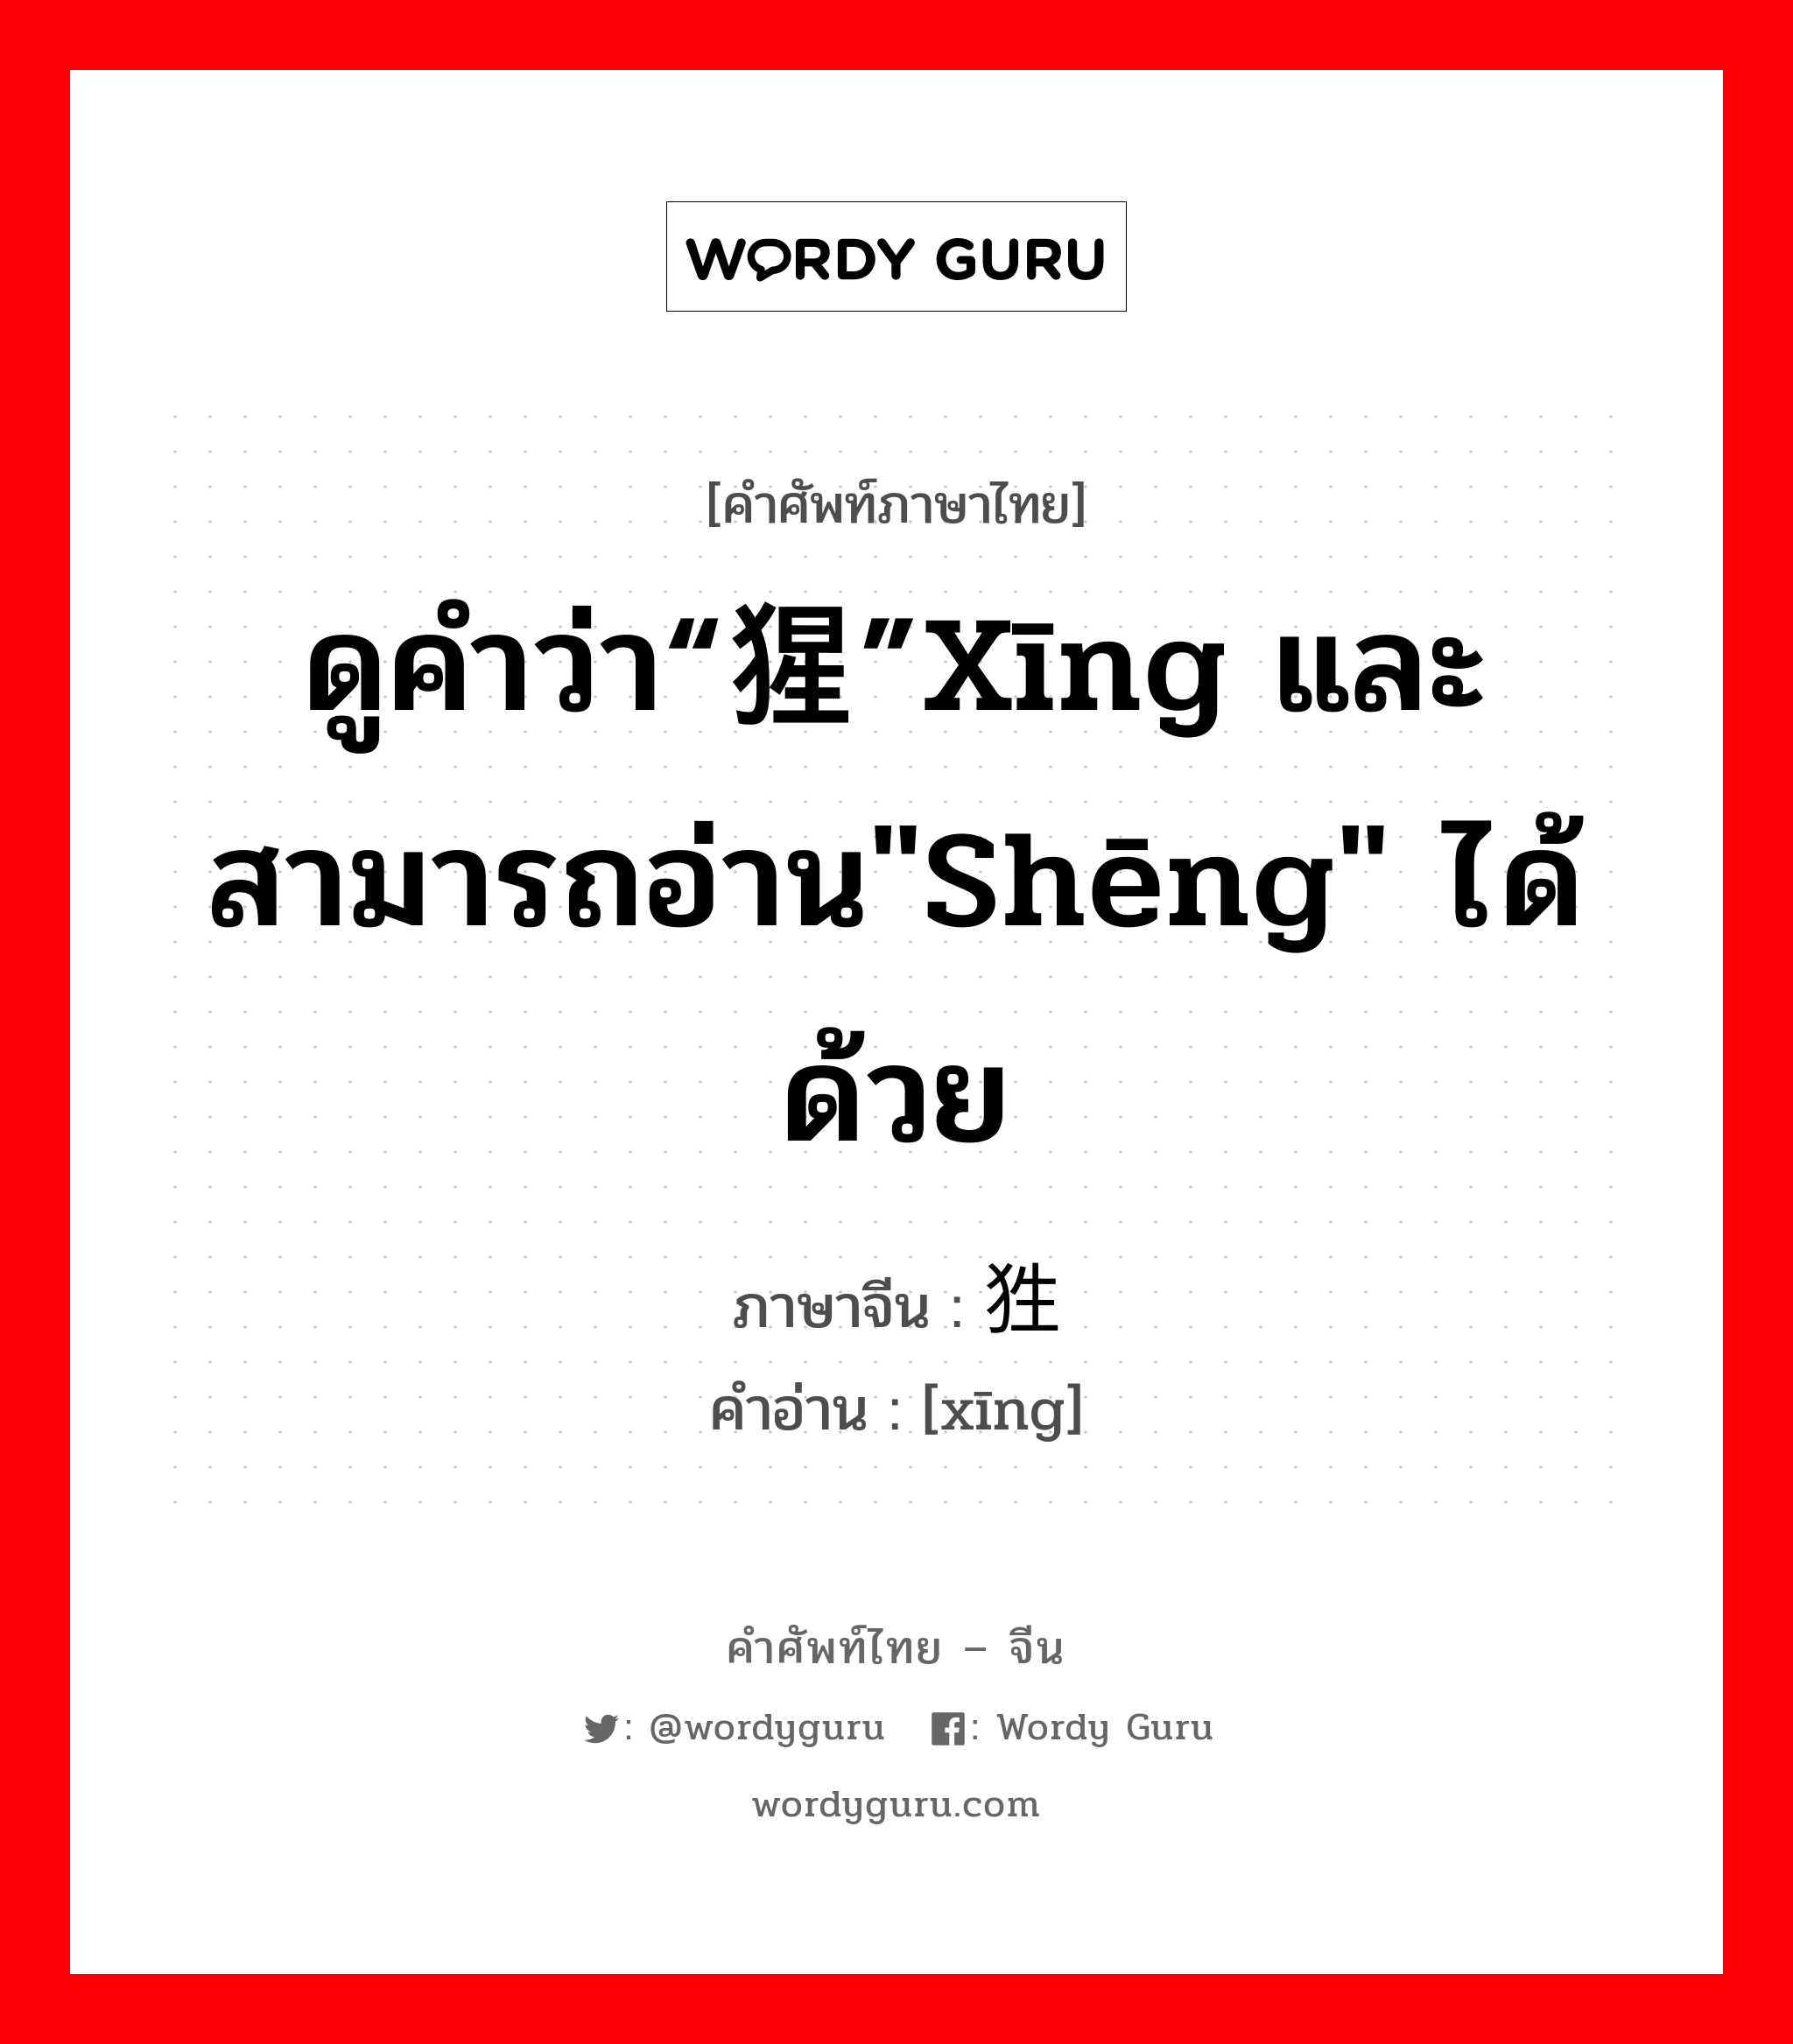 ดูคำว่า“猩”xīng และสามารถอ่าน"shēng" ได้ด้วย ภาษาจีนคืออะไร, คำศัพท์ภาษาไทย - จีน ดูคำว่า“猩”xīng และสามารถอ่าน"shēng" ได้ด้วย ภาษาจีน 狌 คำอ่าน [xīng]